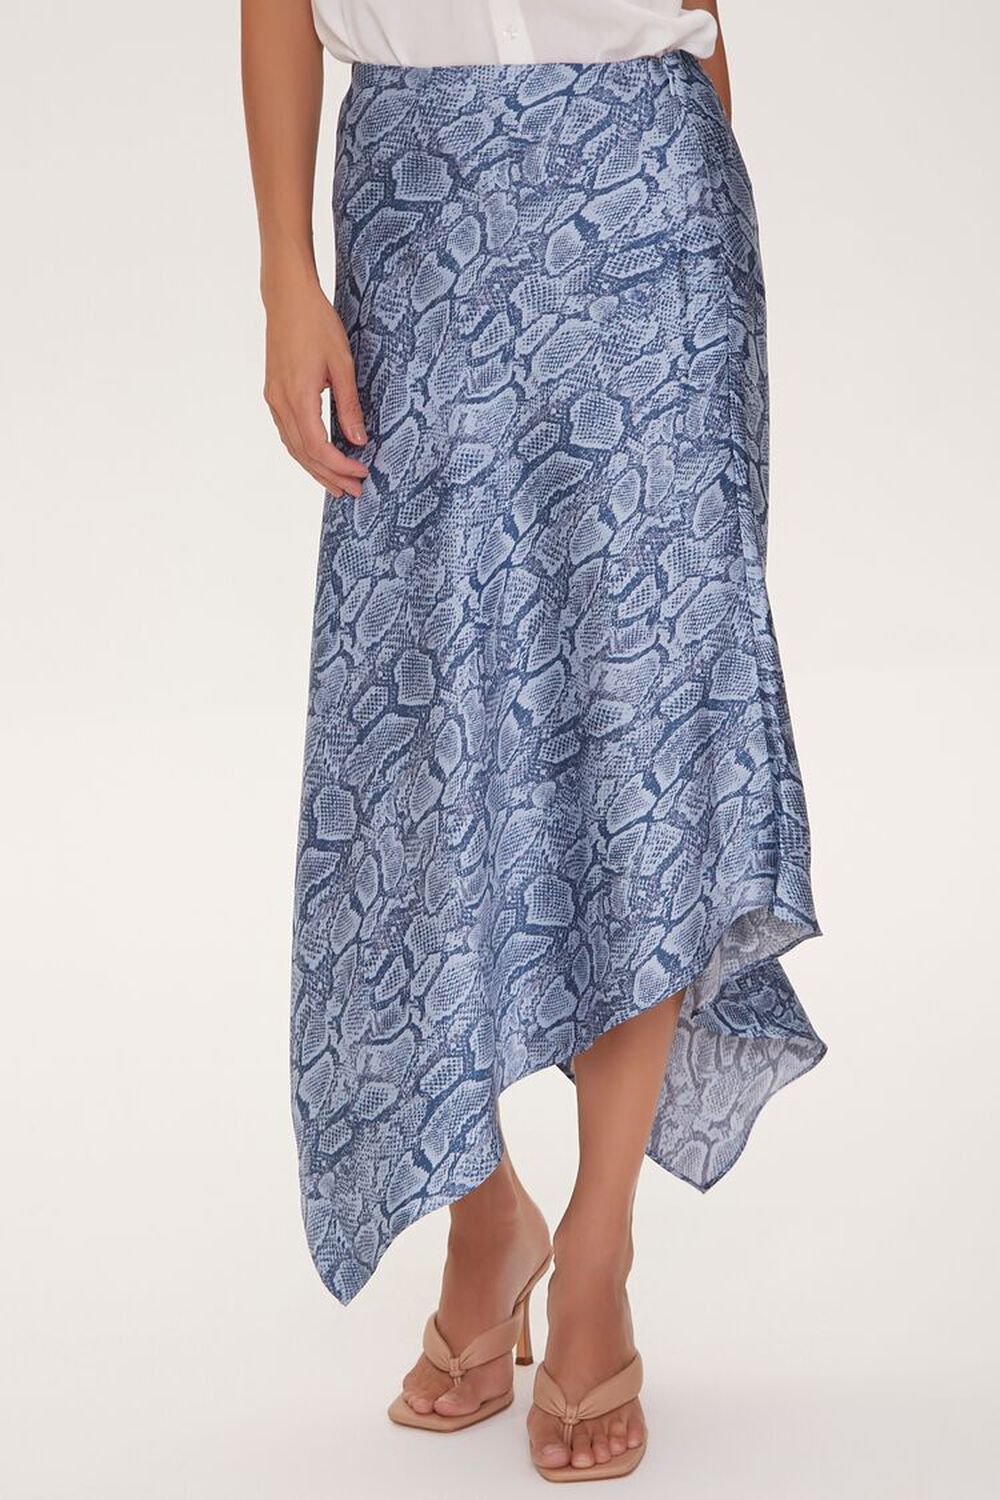 BLUE/MULTI Satin Snake Print Skirt, image 2